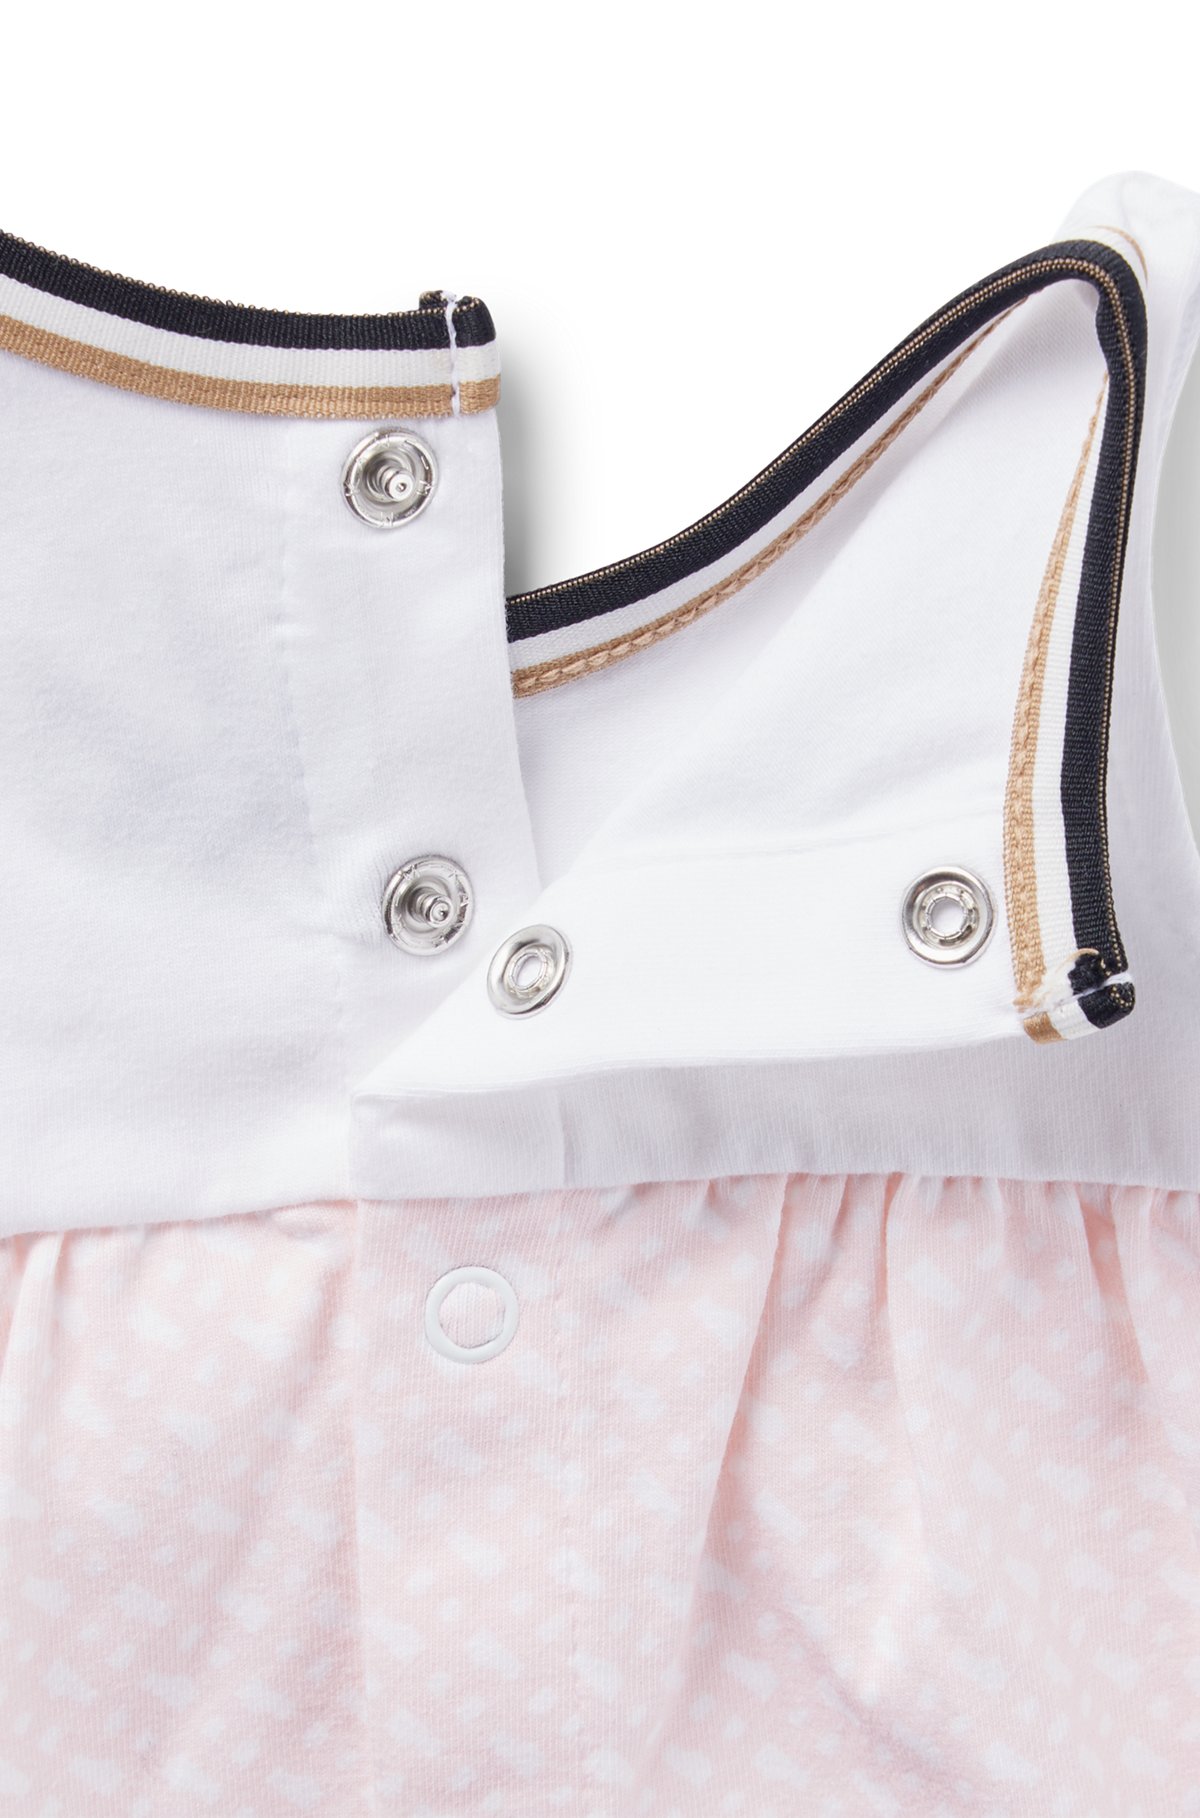 베이비 모노그램 패턴 스커트 디자인 스트레치 코튼 드레스, 라이트 핑크